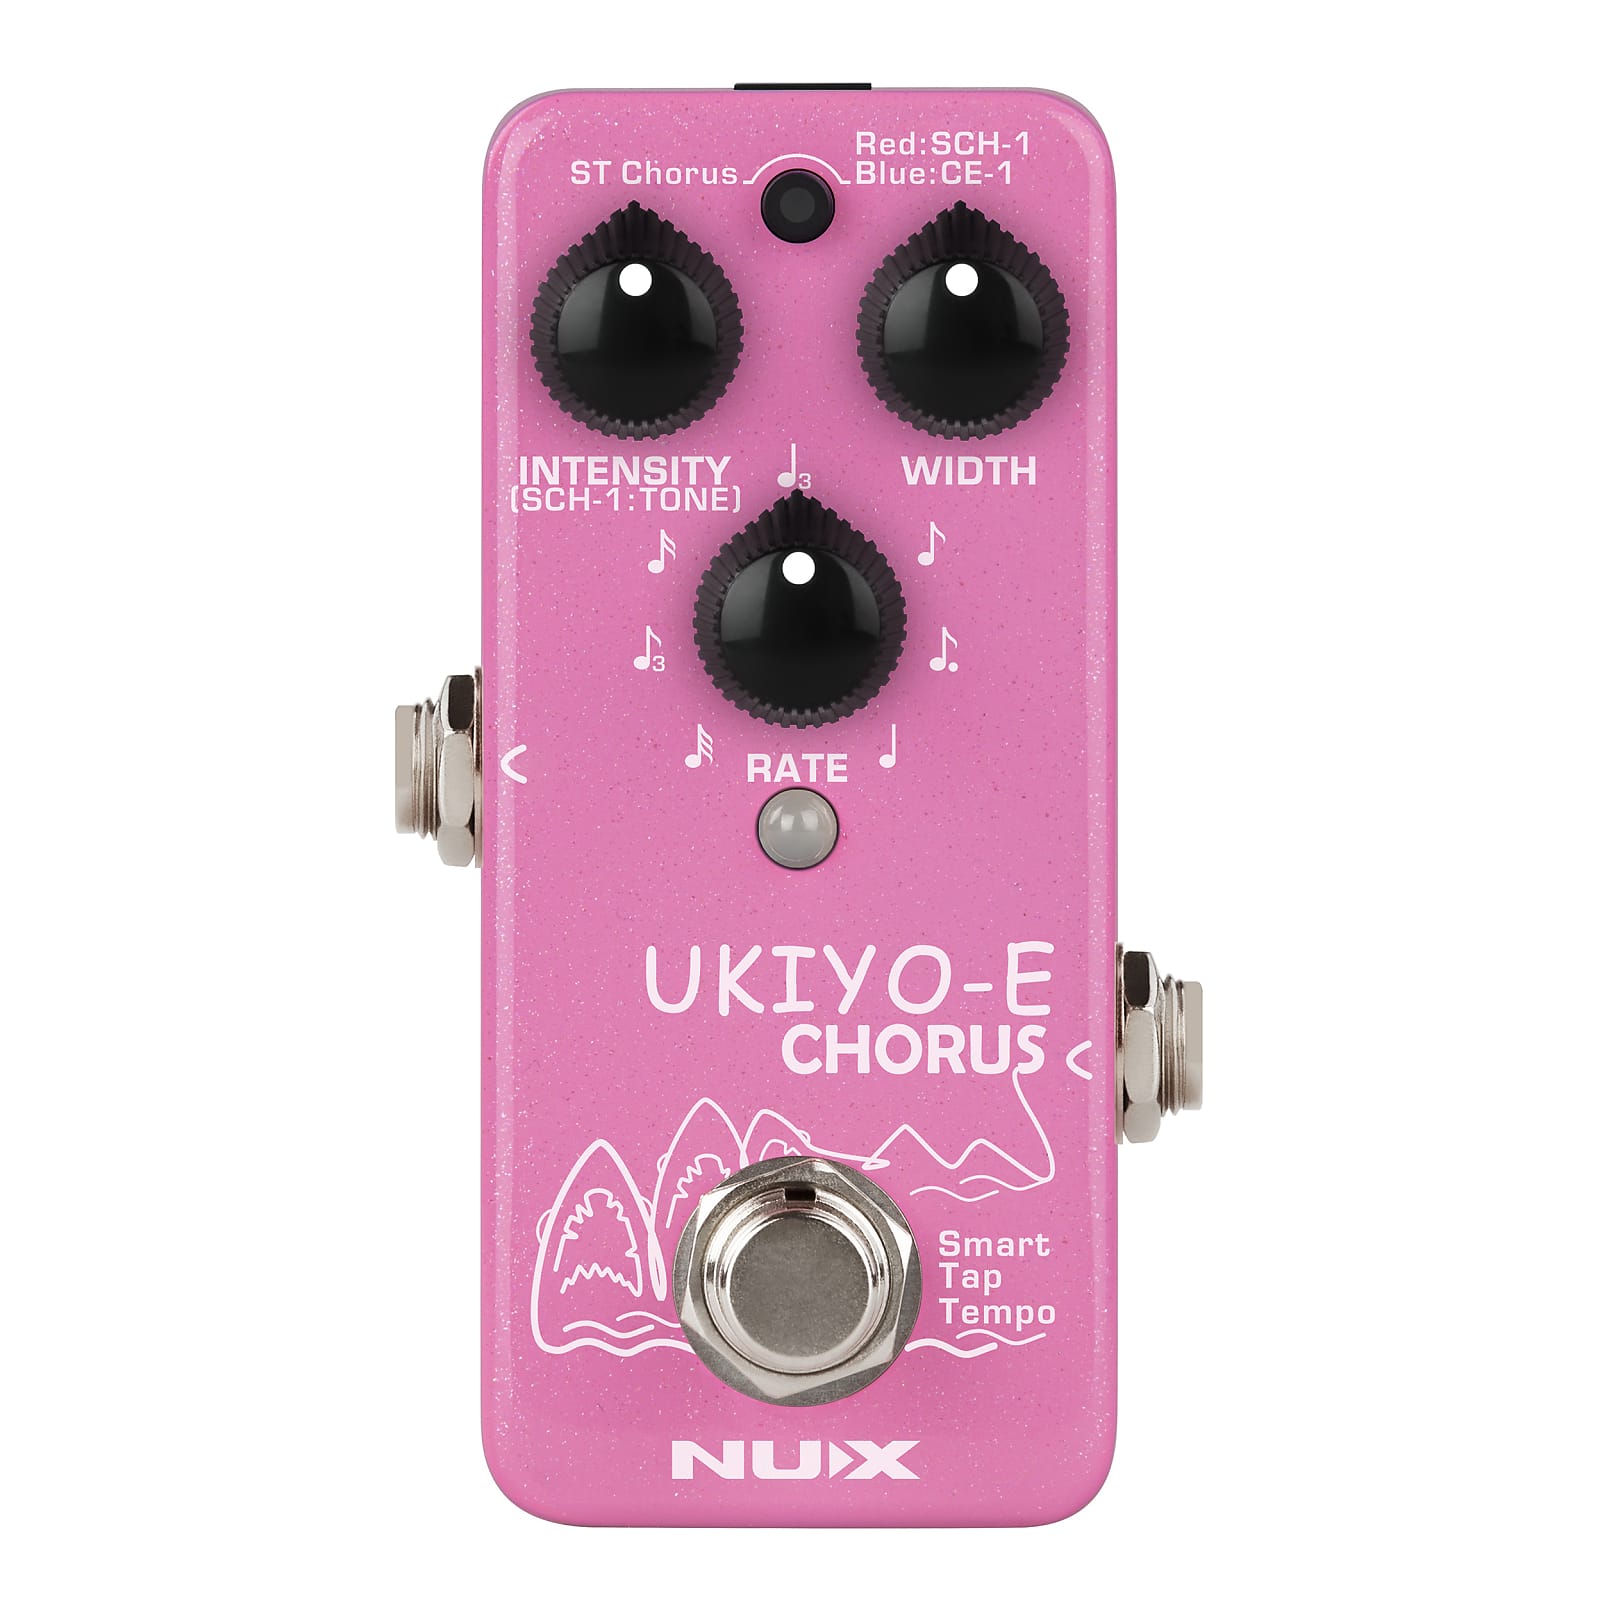 NuX NCH-4 UKIYO-E Chorus Mini Core Effects Pedal